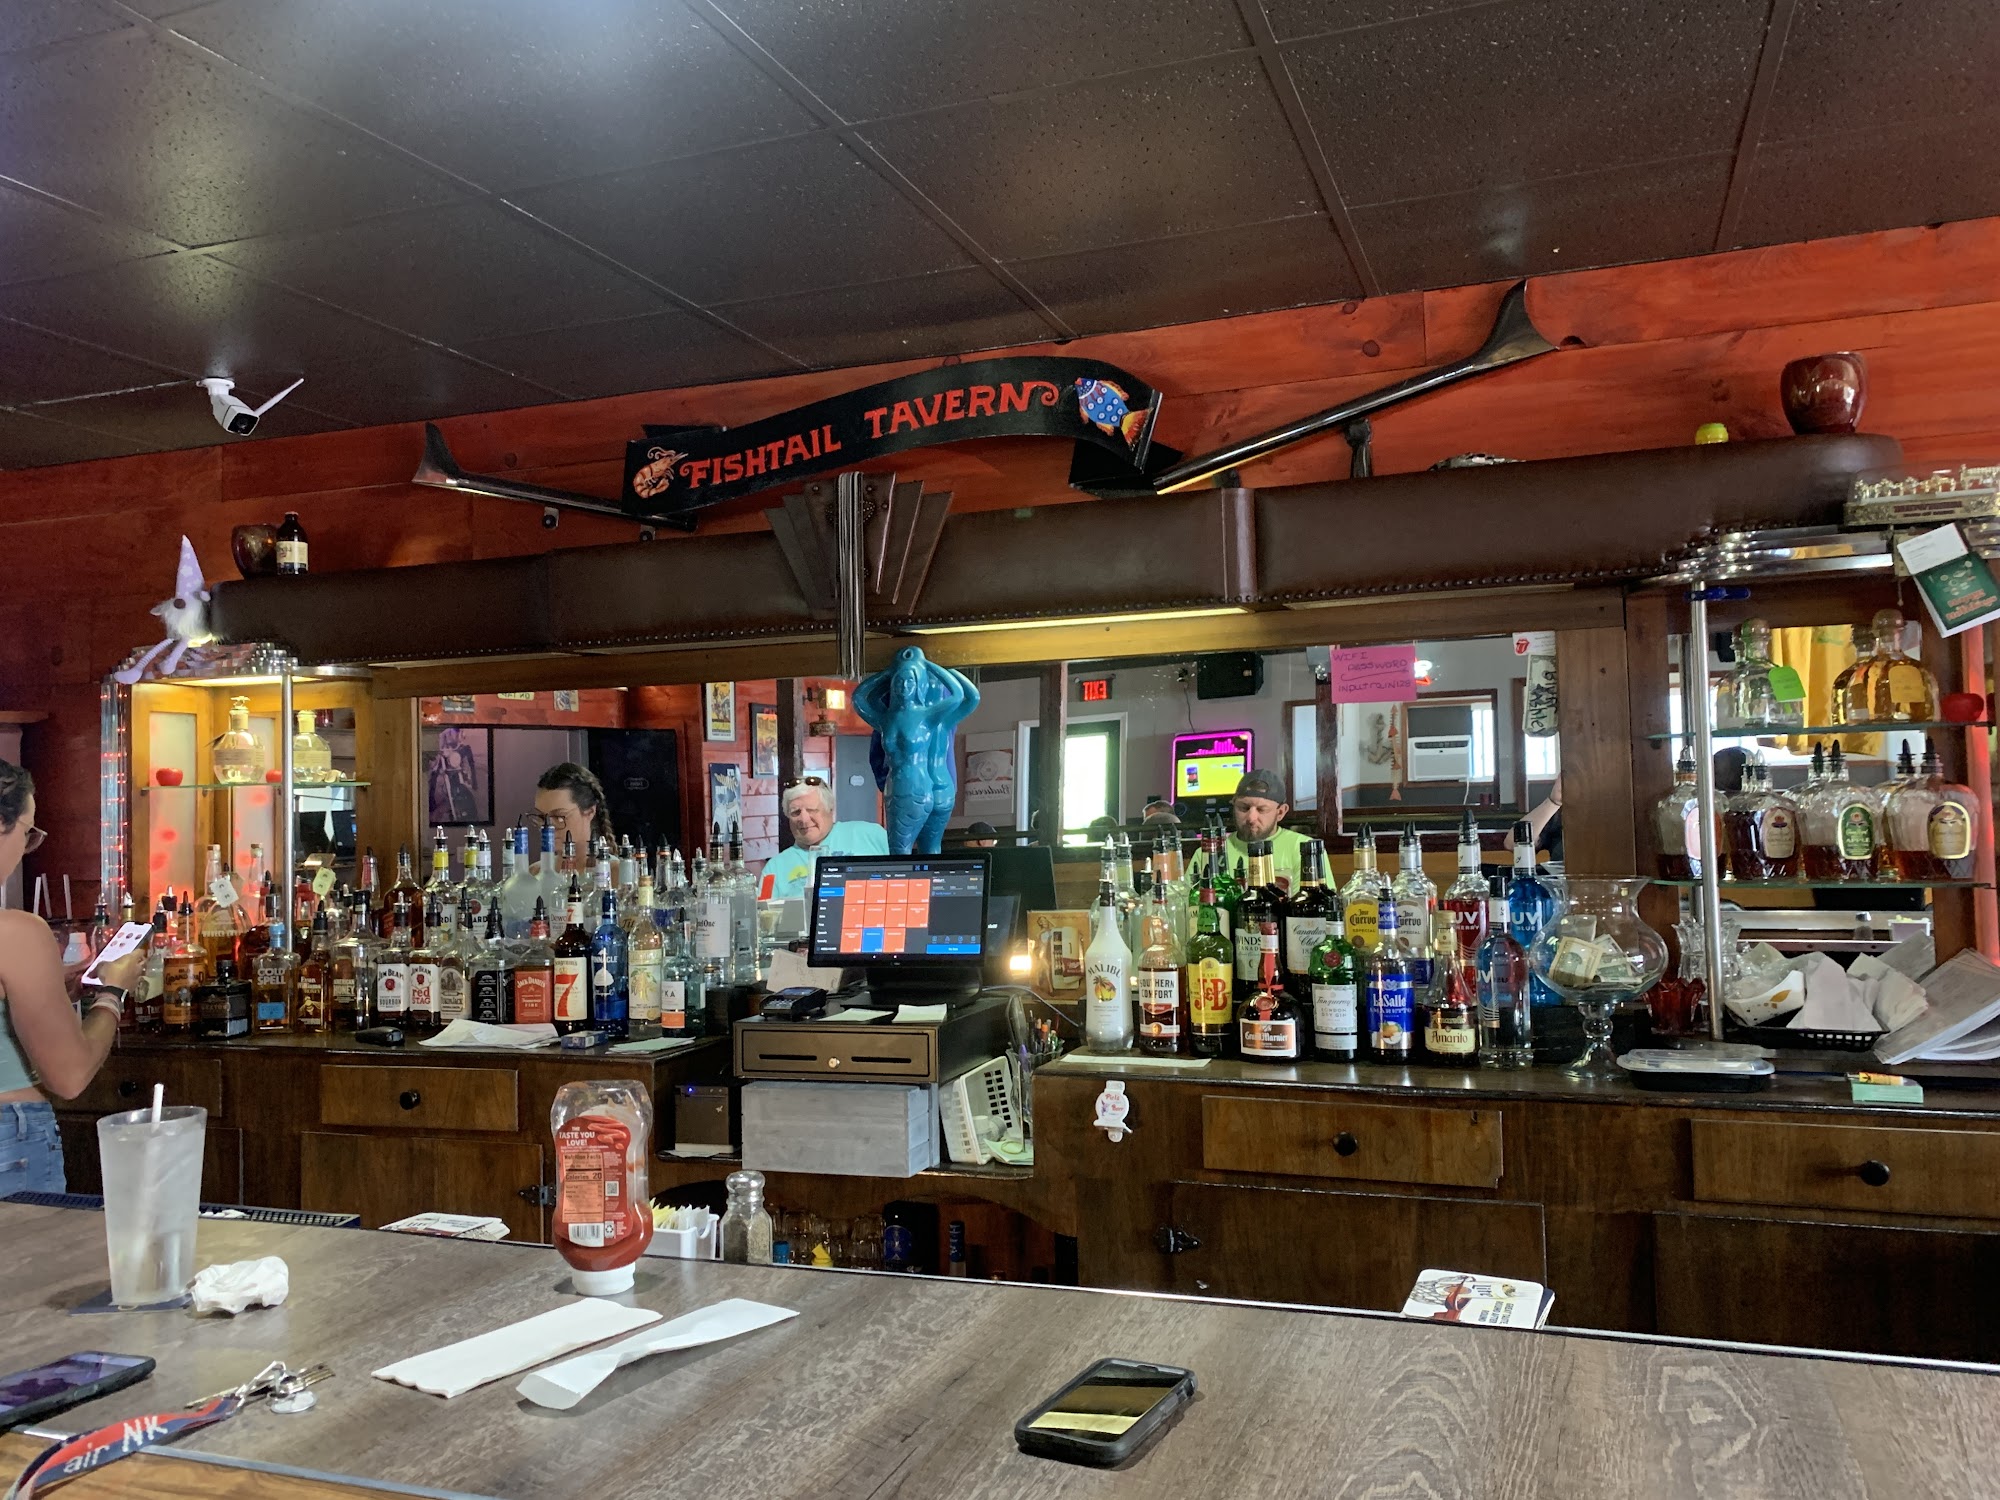 Fishtail Tavern